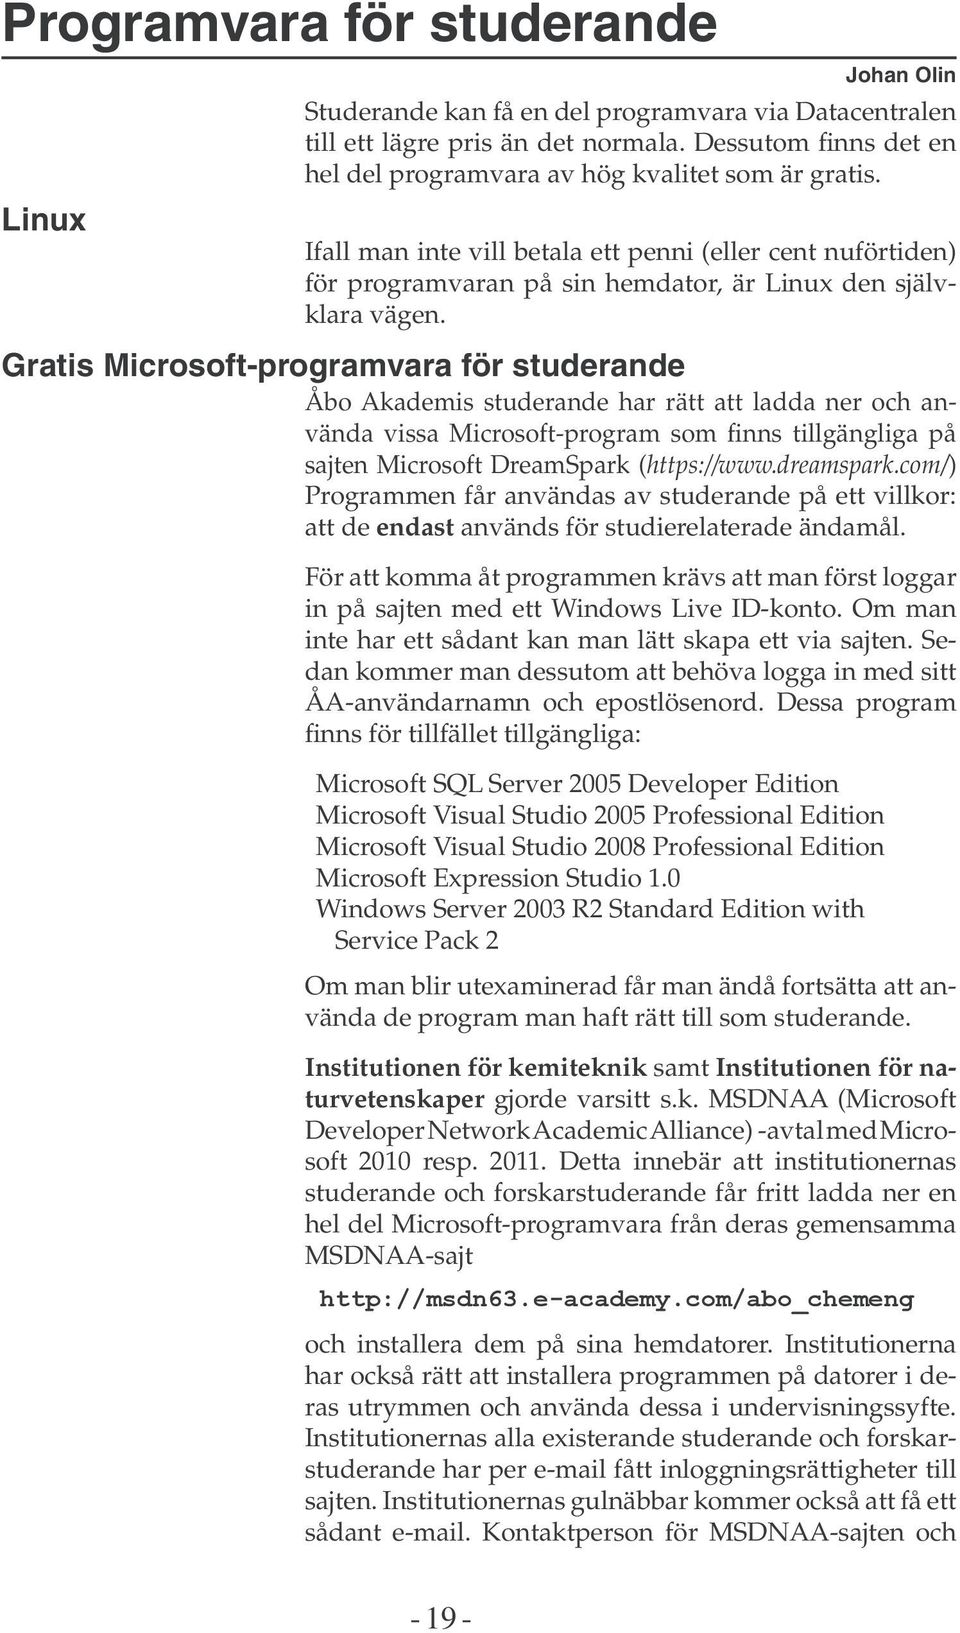 Gratis Microsoft-programvara för studerande Åbo Akademis studerande har rätt att ladda ner och använda vissa Microsoft-program som finns tillgängliga på sajten Microsoft DreamSpark (https://www.